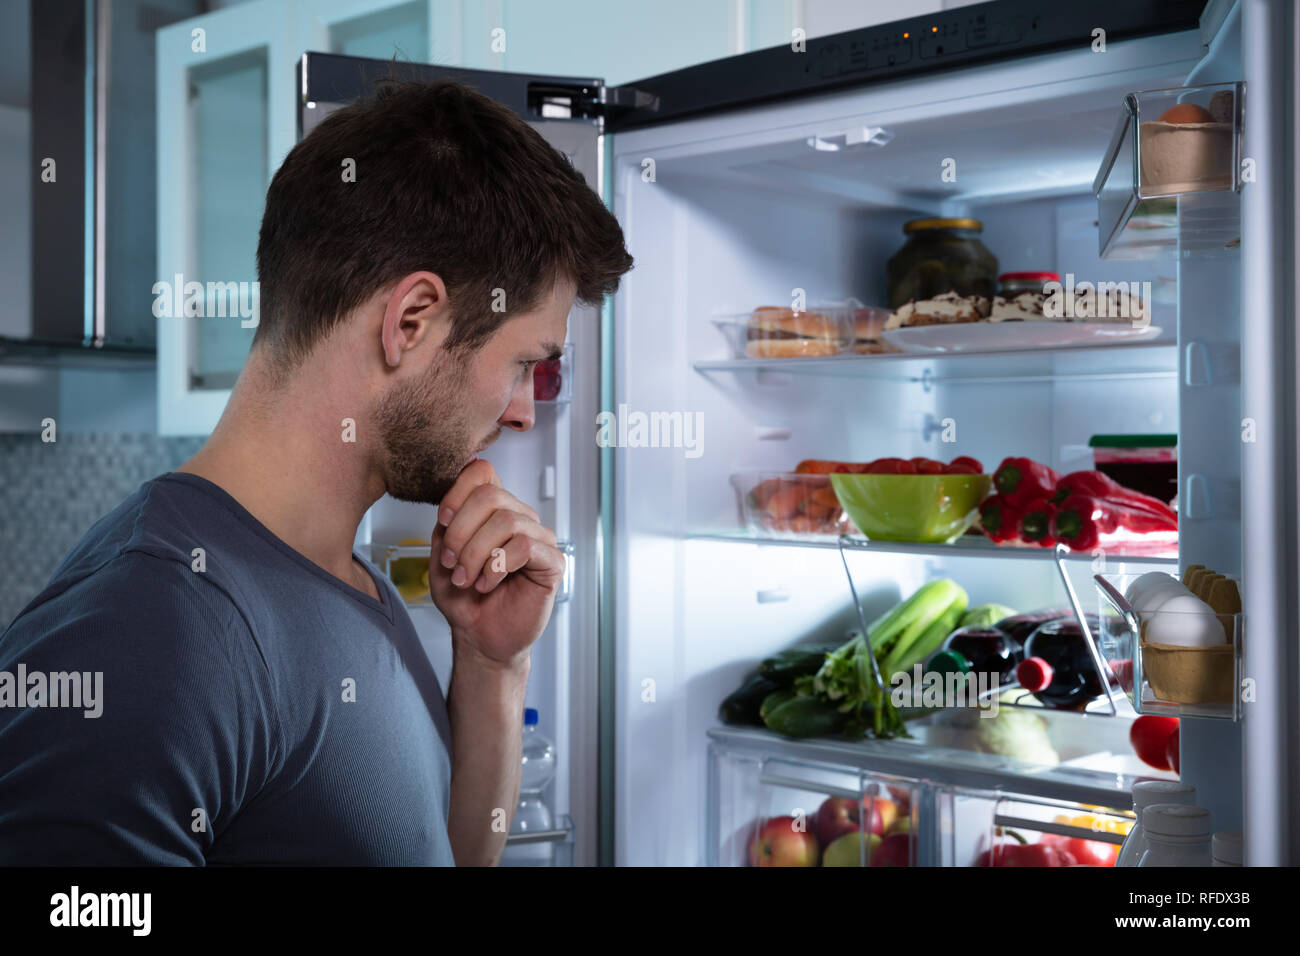 Schöner Mann auf der Suche nach Essen im Kühlschrank Stockfotografie - Alamy